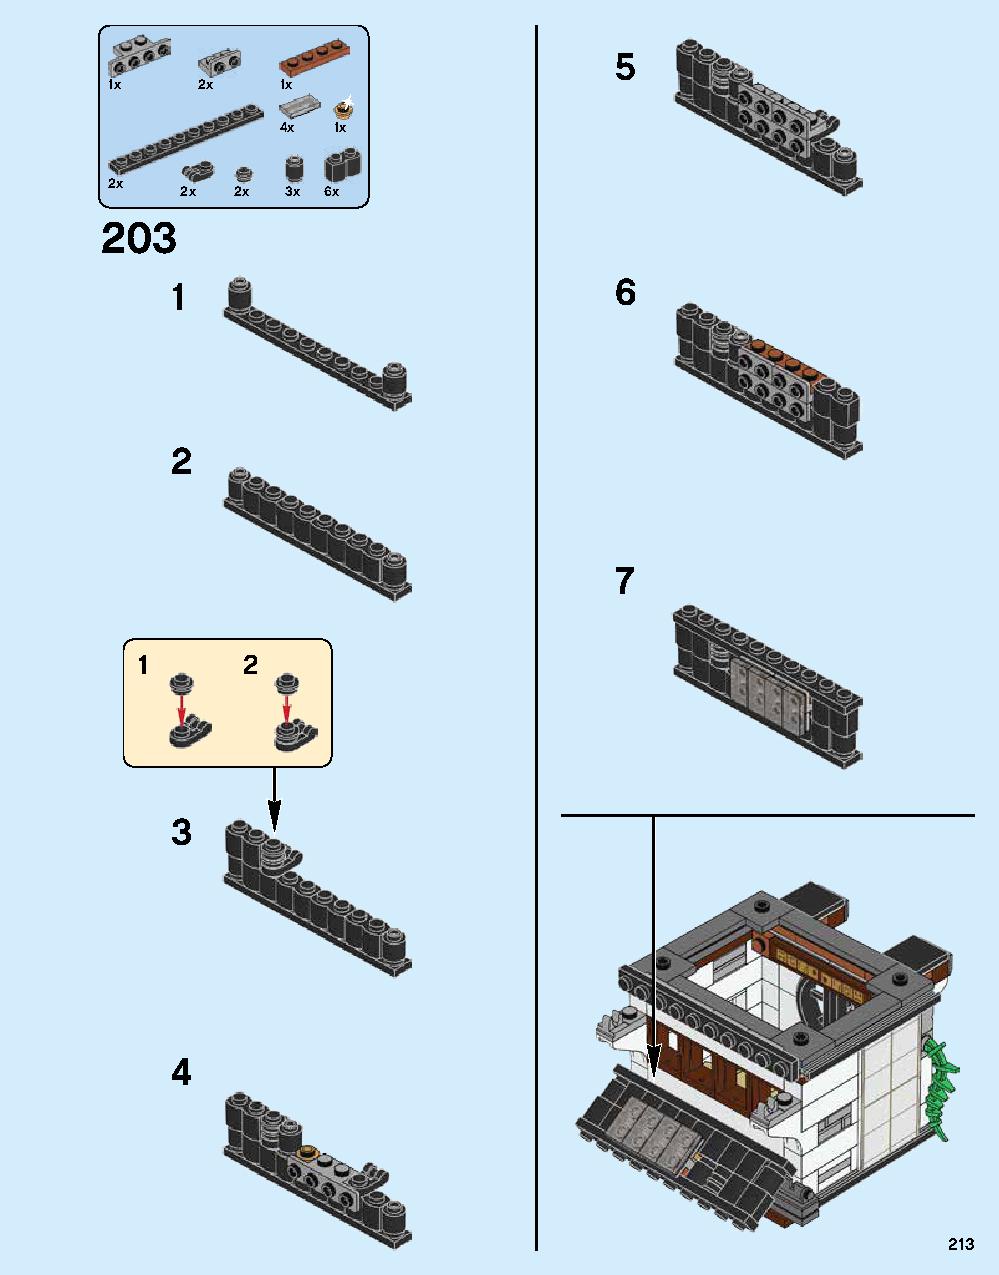 ニンジャゴー シティ 70620 レゴの商品情報 レゴの説明書・組立方法 213 page